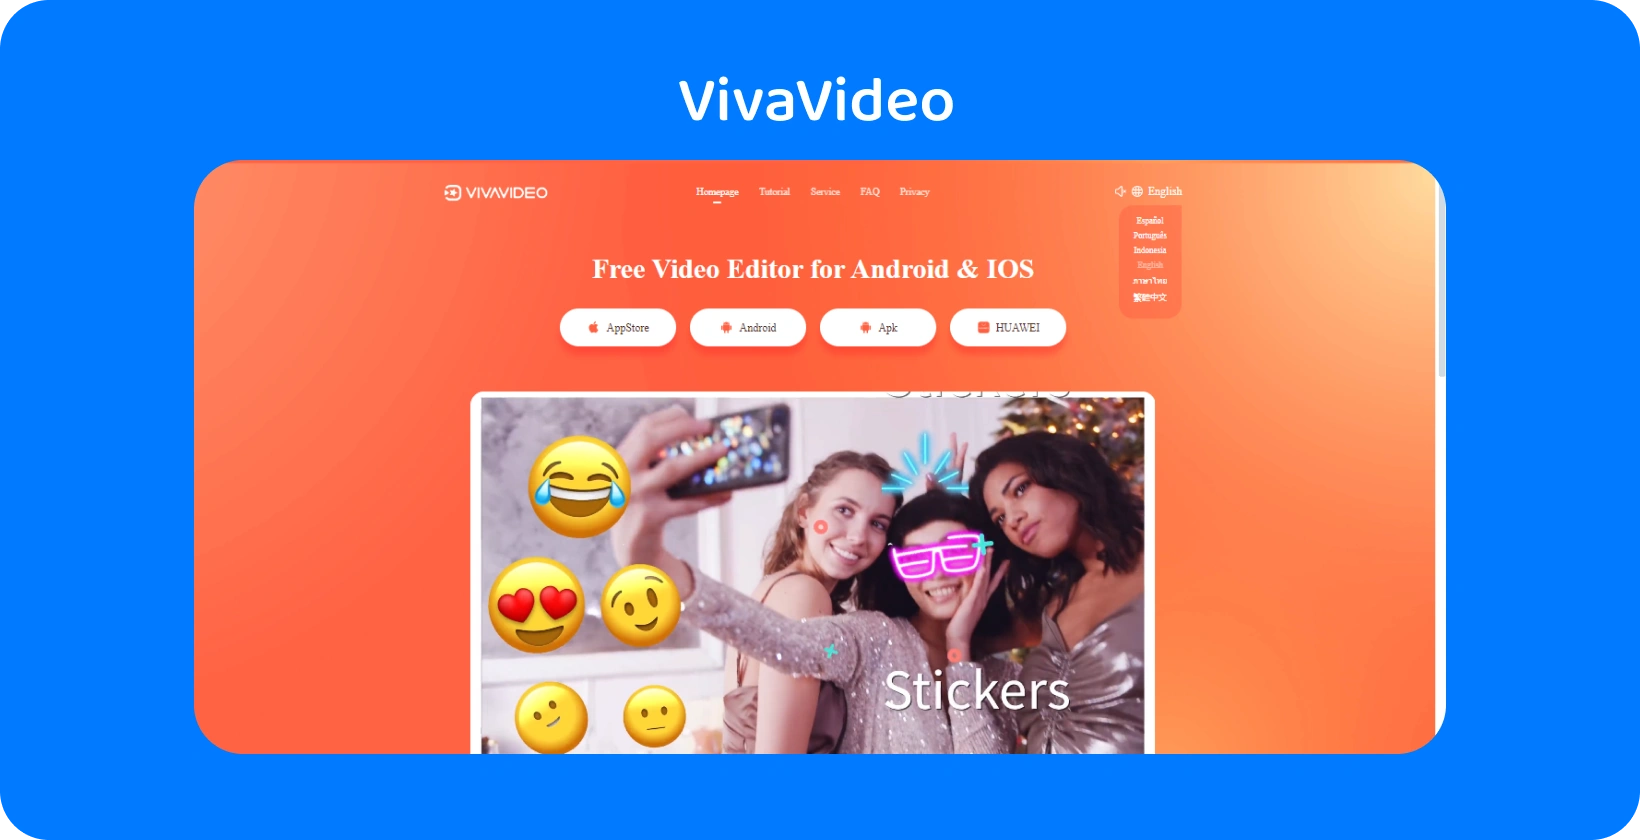 VivaVideo halaman aplikasi dengan latar belakang oranye cerah, menampilkan fitur stiker untuk menyempurnakan video di Android dan iOS.
